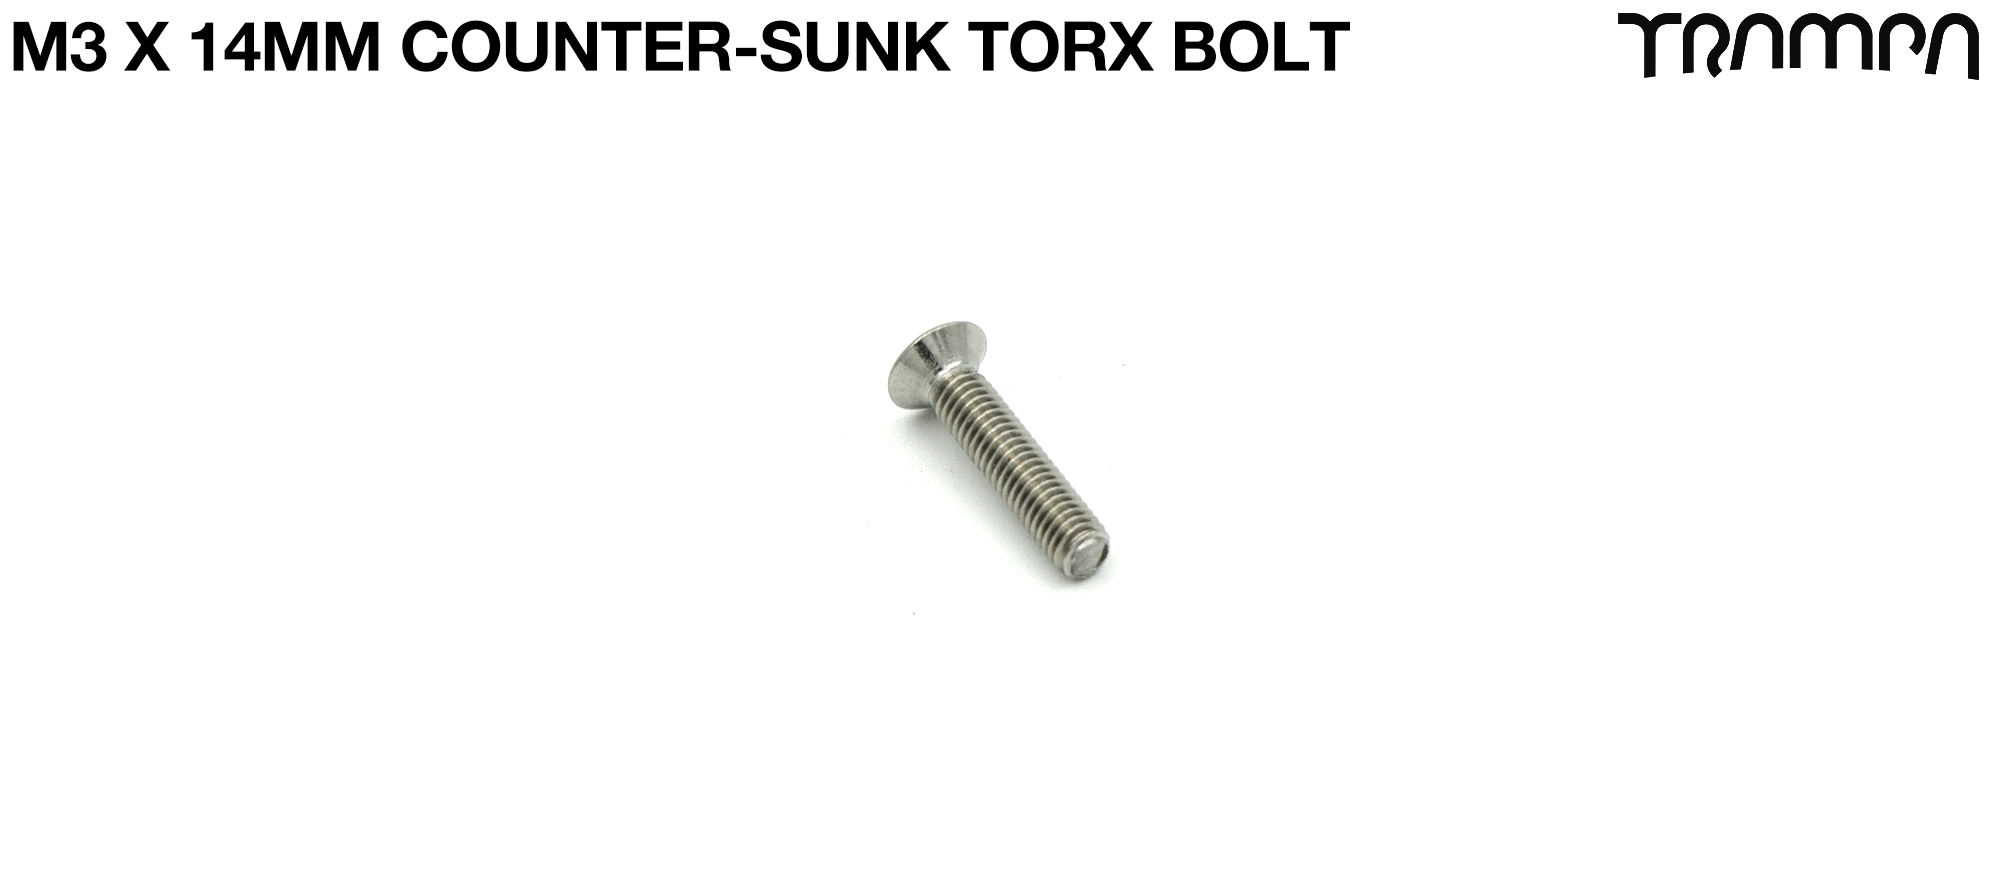 M3 x 14mm Counter Sunk Torx Bolt - SRT-500